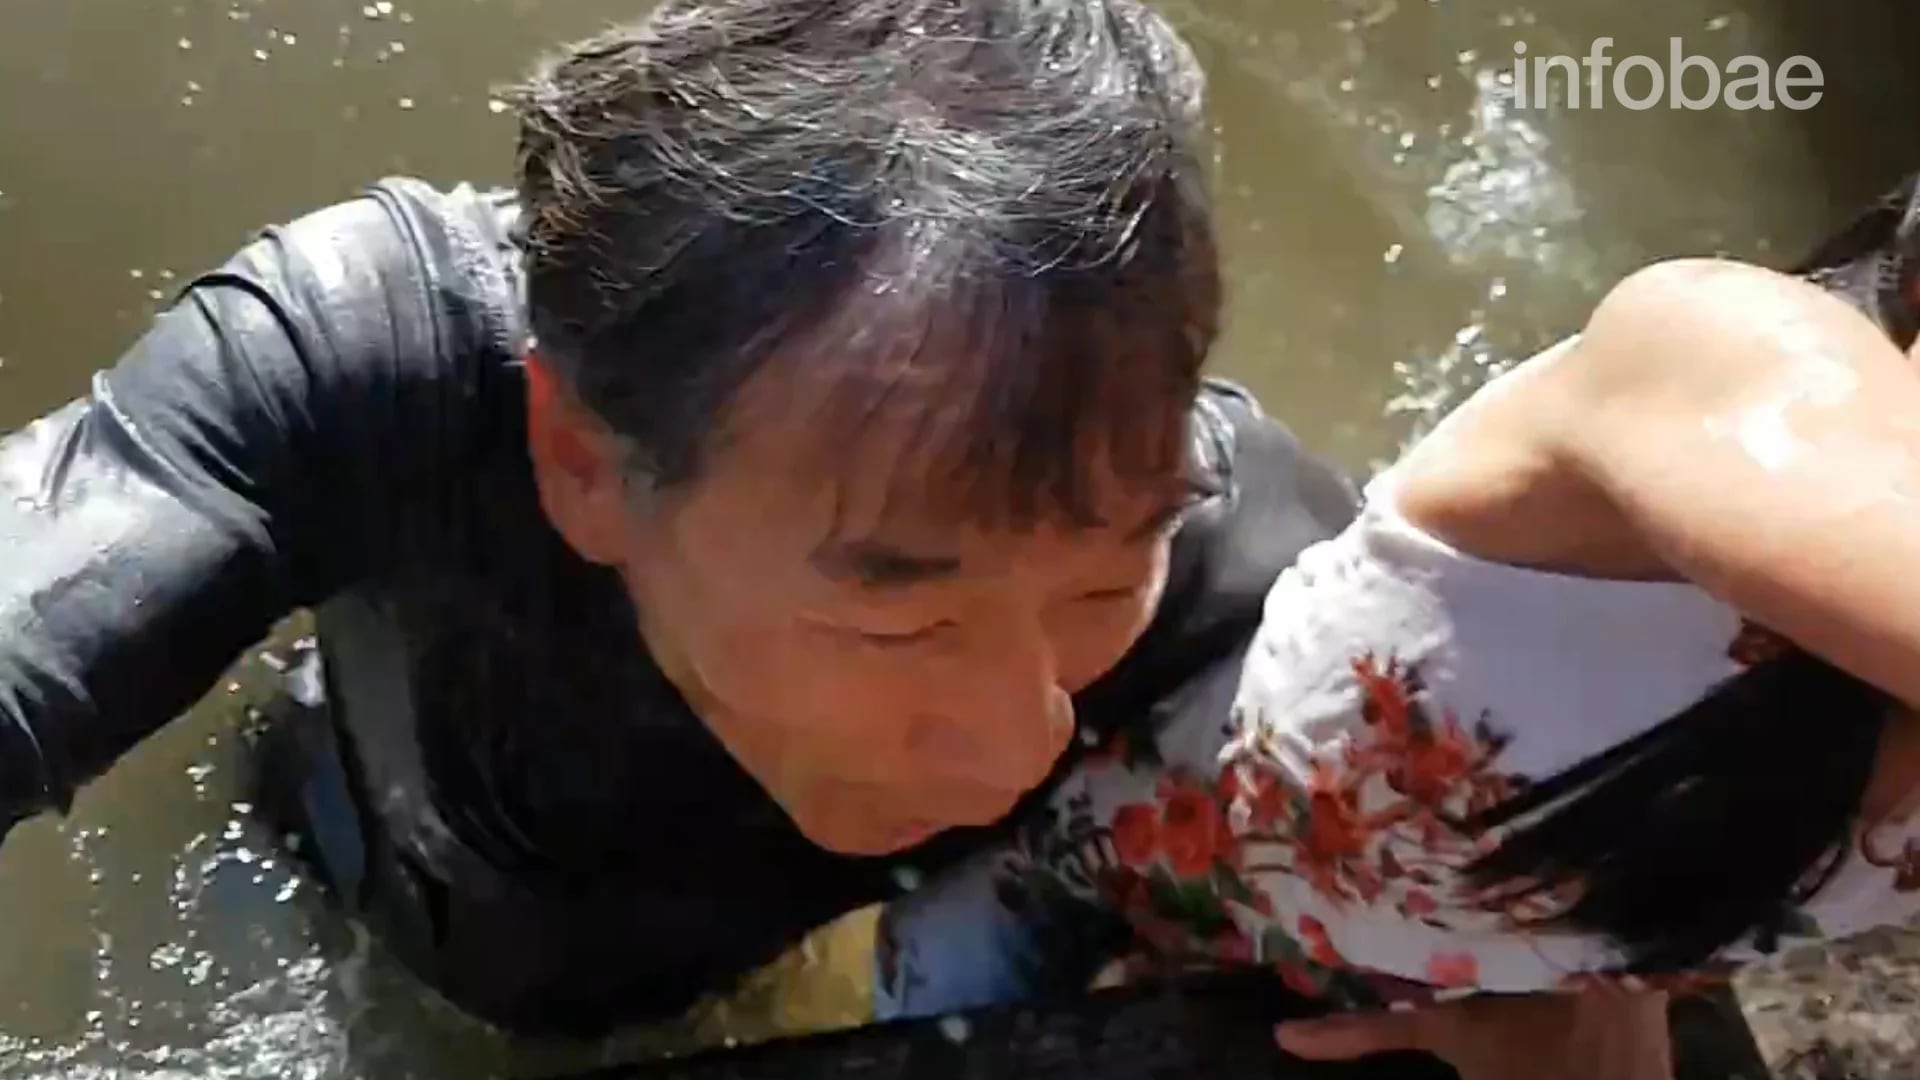 La rápida reacción de su abuelo, que se lanzó sin dudarlo y sacó a la niña del agua, evitó que se ahogara o fuera golpeada por el animal